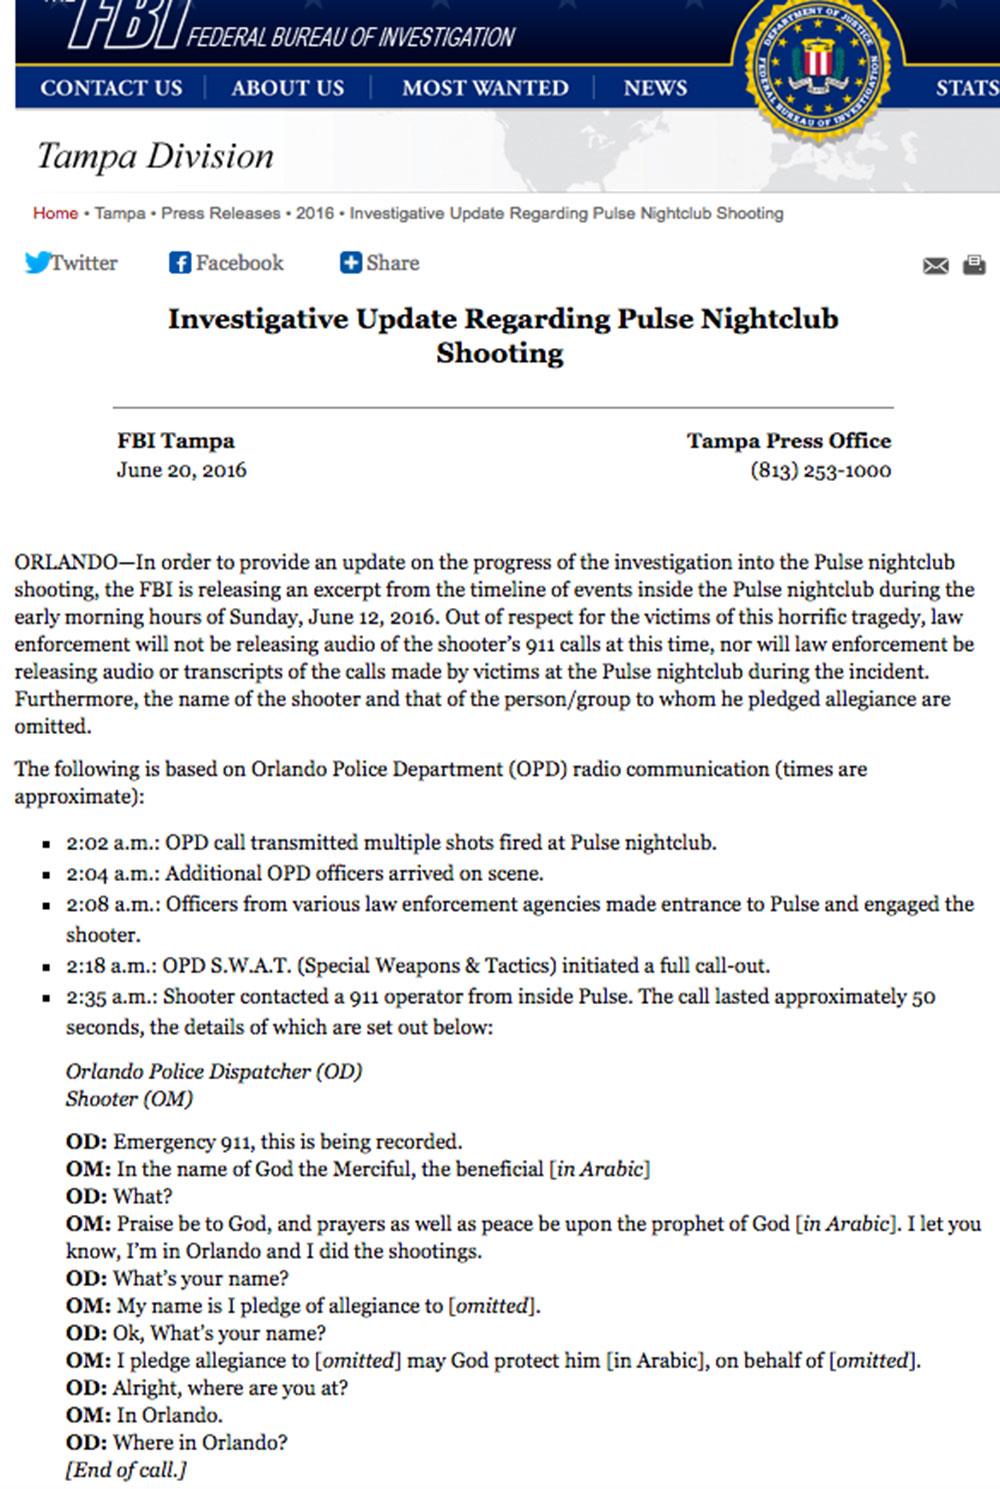 Delar av Omar Mateens samtal till 911 har offentliggjorts av FBI. En del är i dialogform, en del som referat.